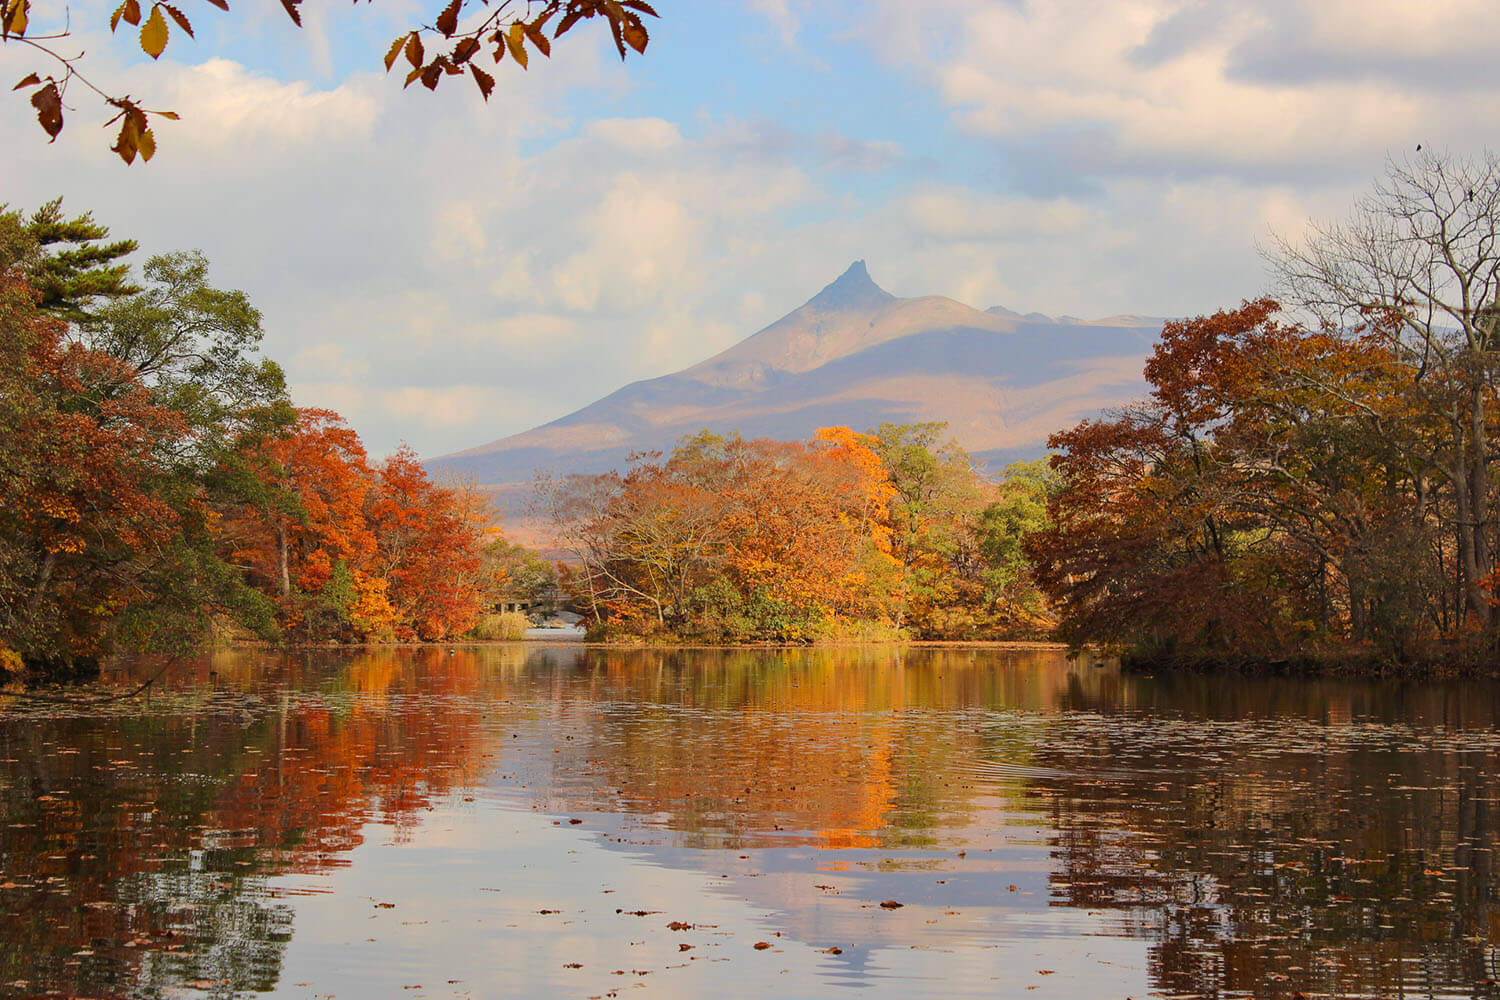 駒ヶ岳を紅葉が染め上げ、湖面に映える様子は一幅の絵さながらの美しさ